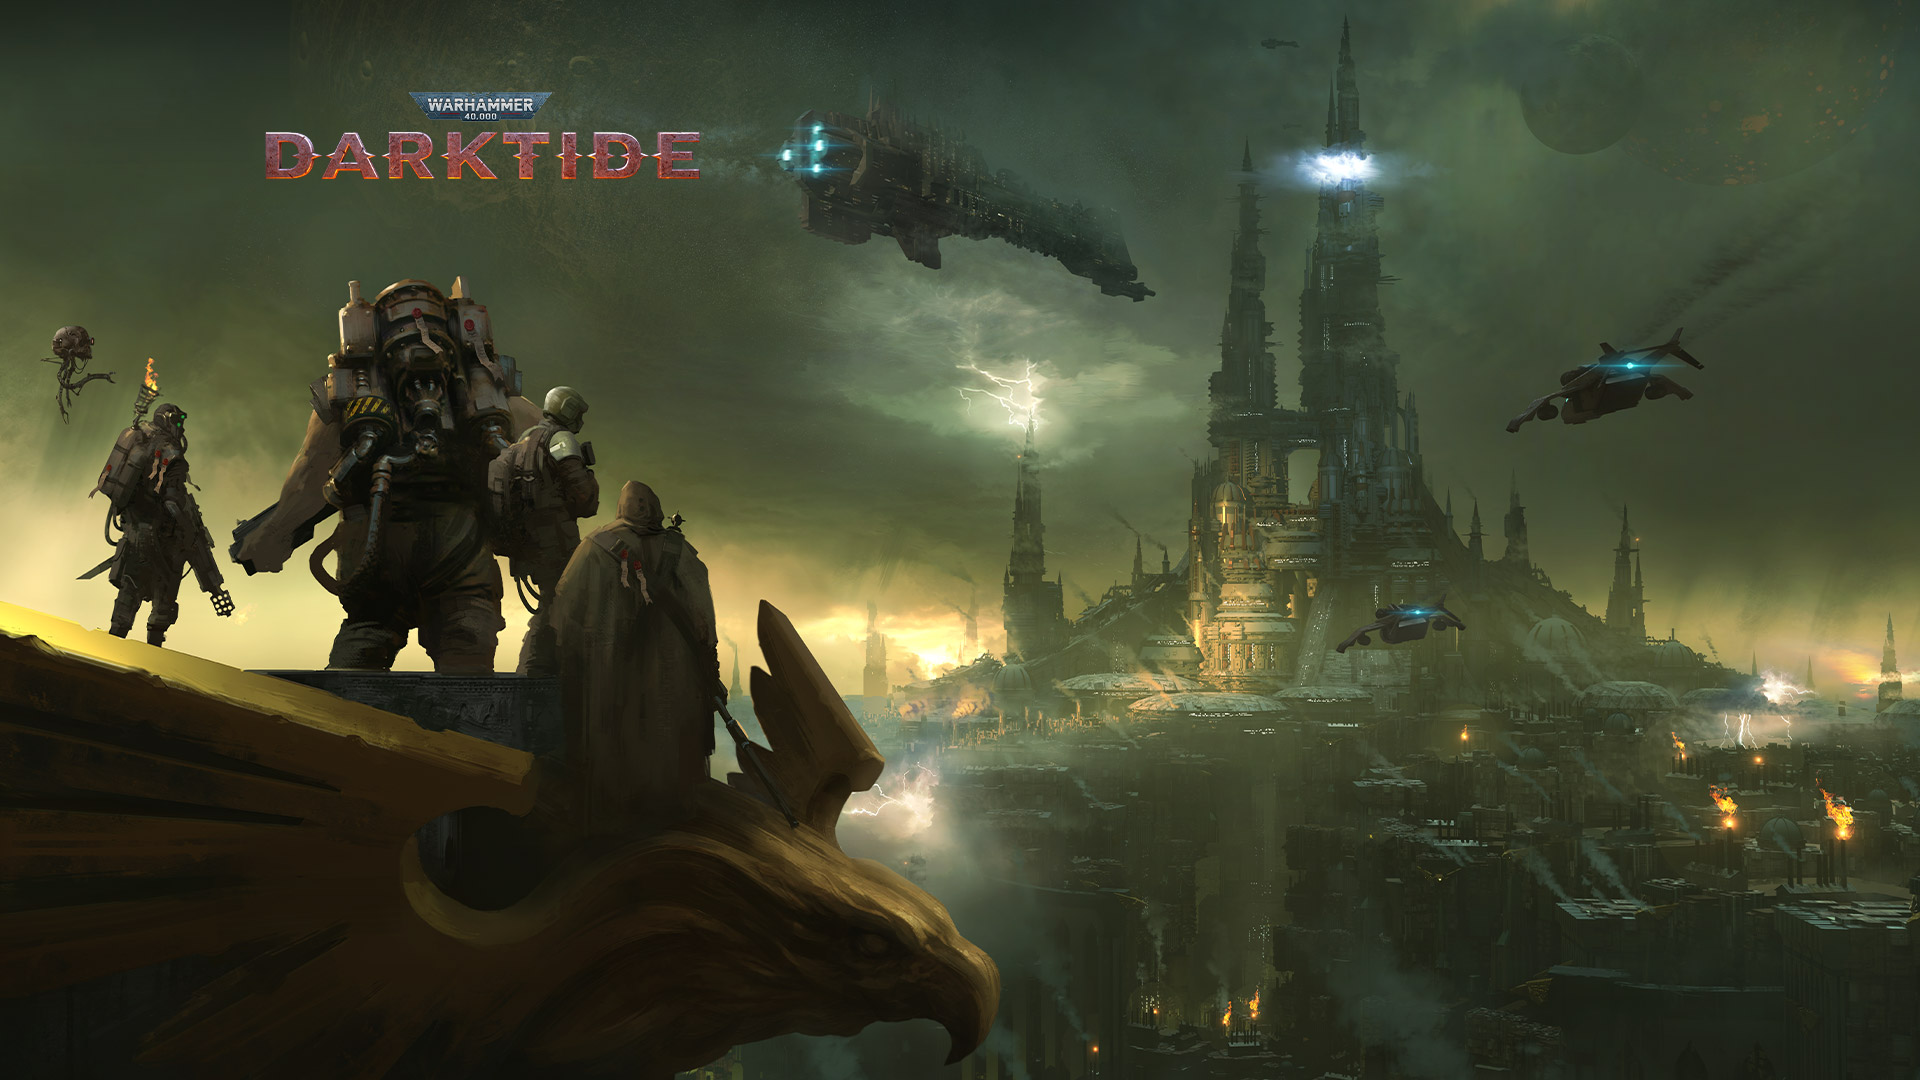 Warhammer 40,000 Darktide, en grupp karaktärer ser ut över en stad höljd i dimma.